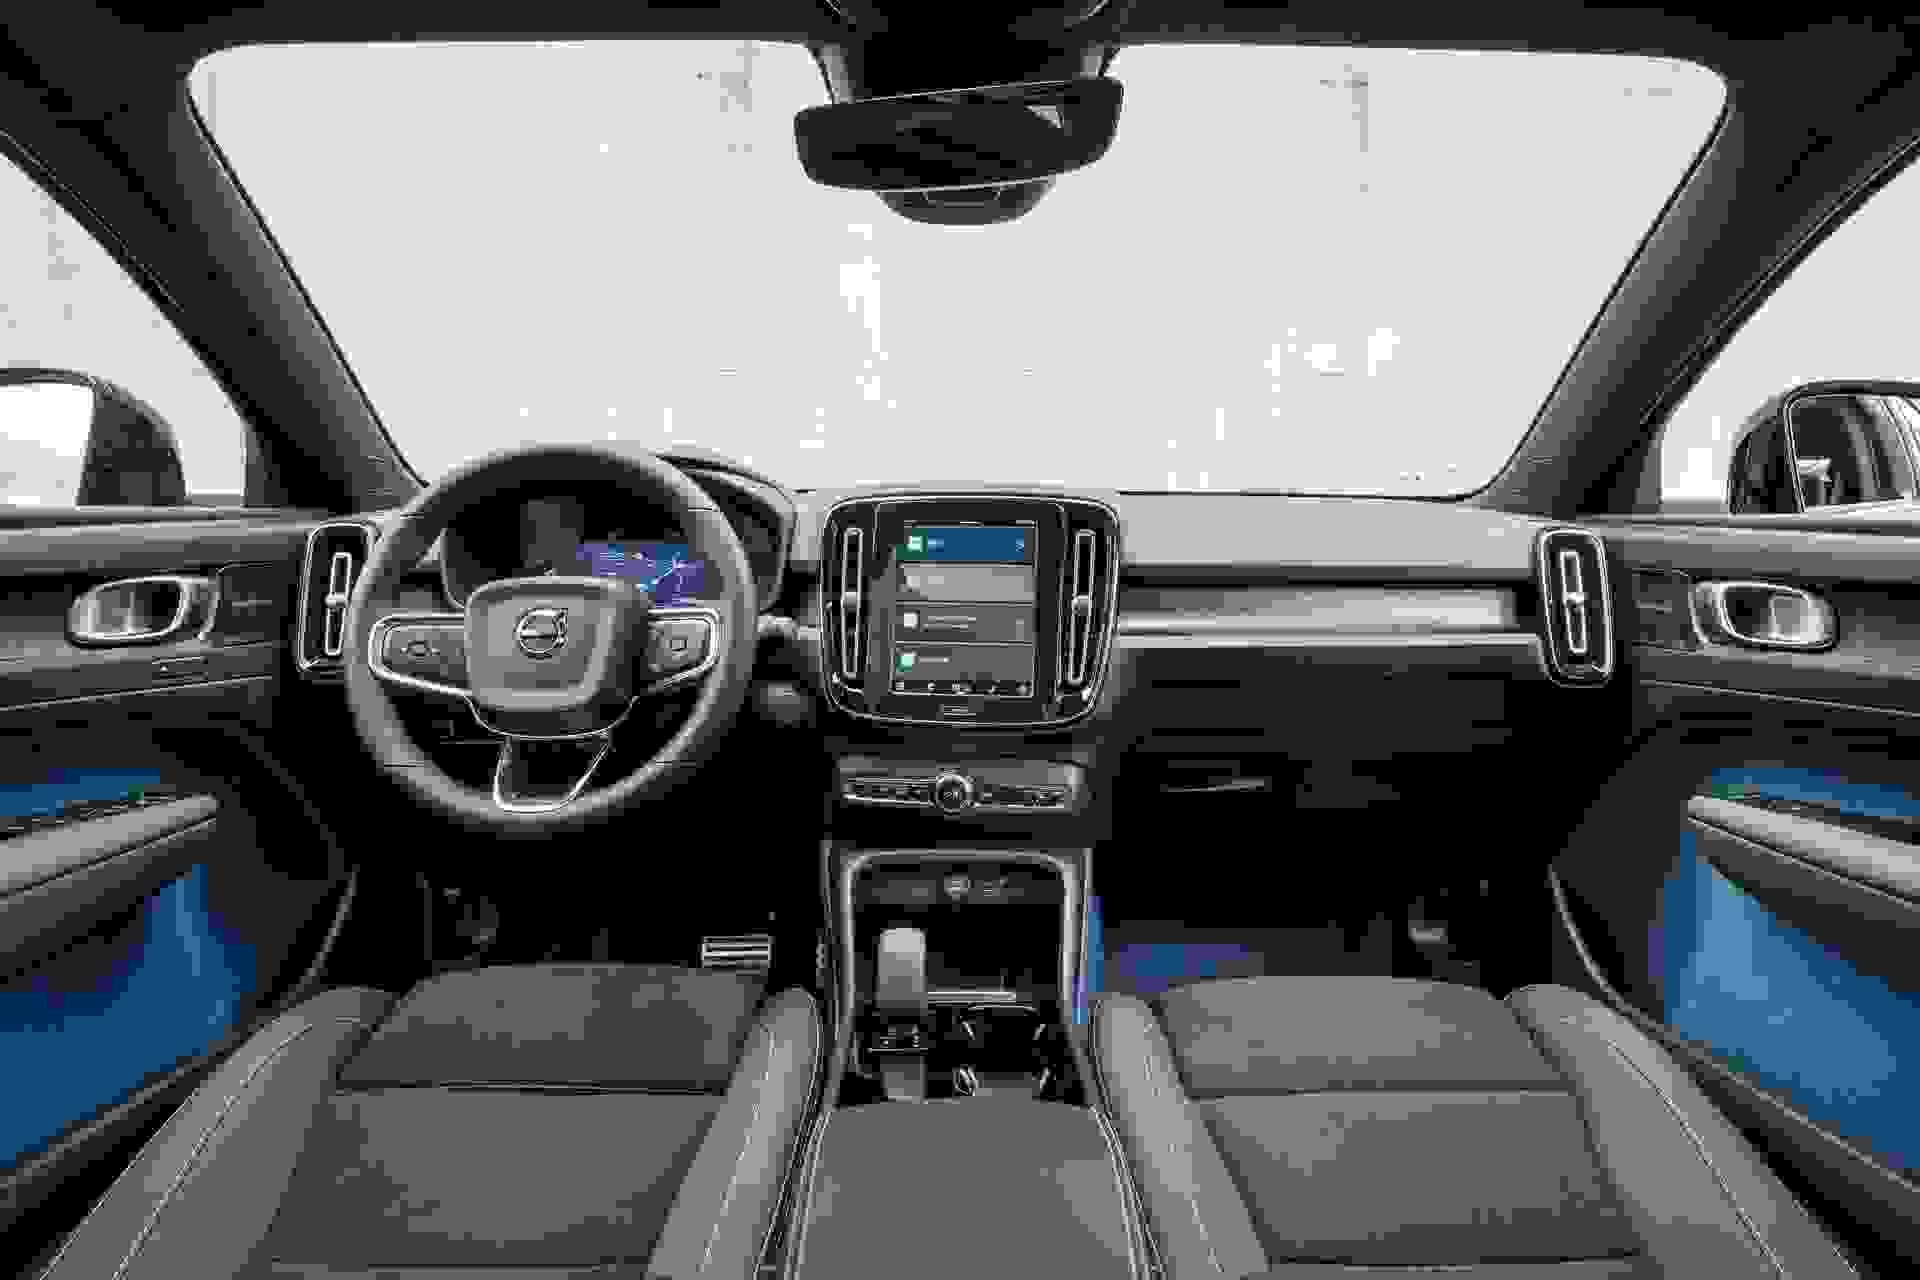 287348 Volvo C40 Recharge Interior